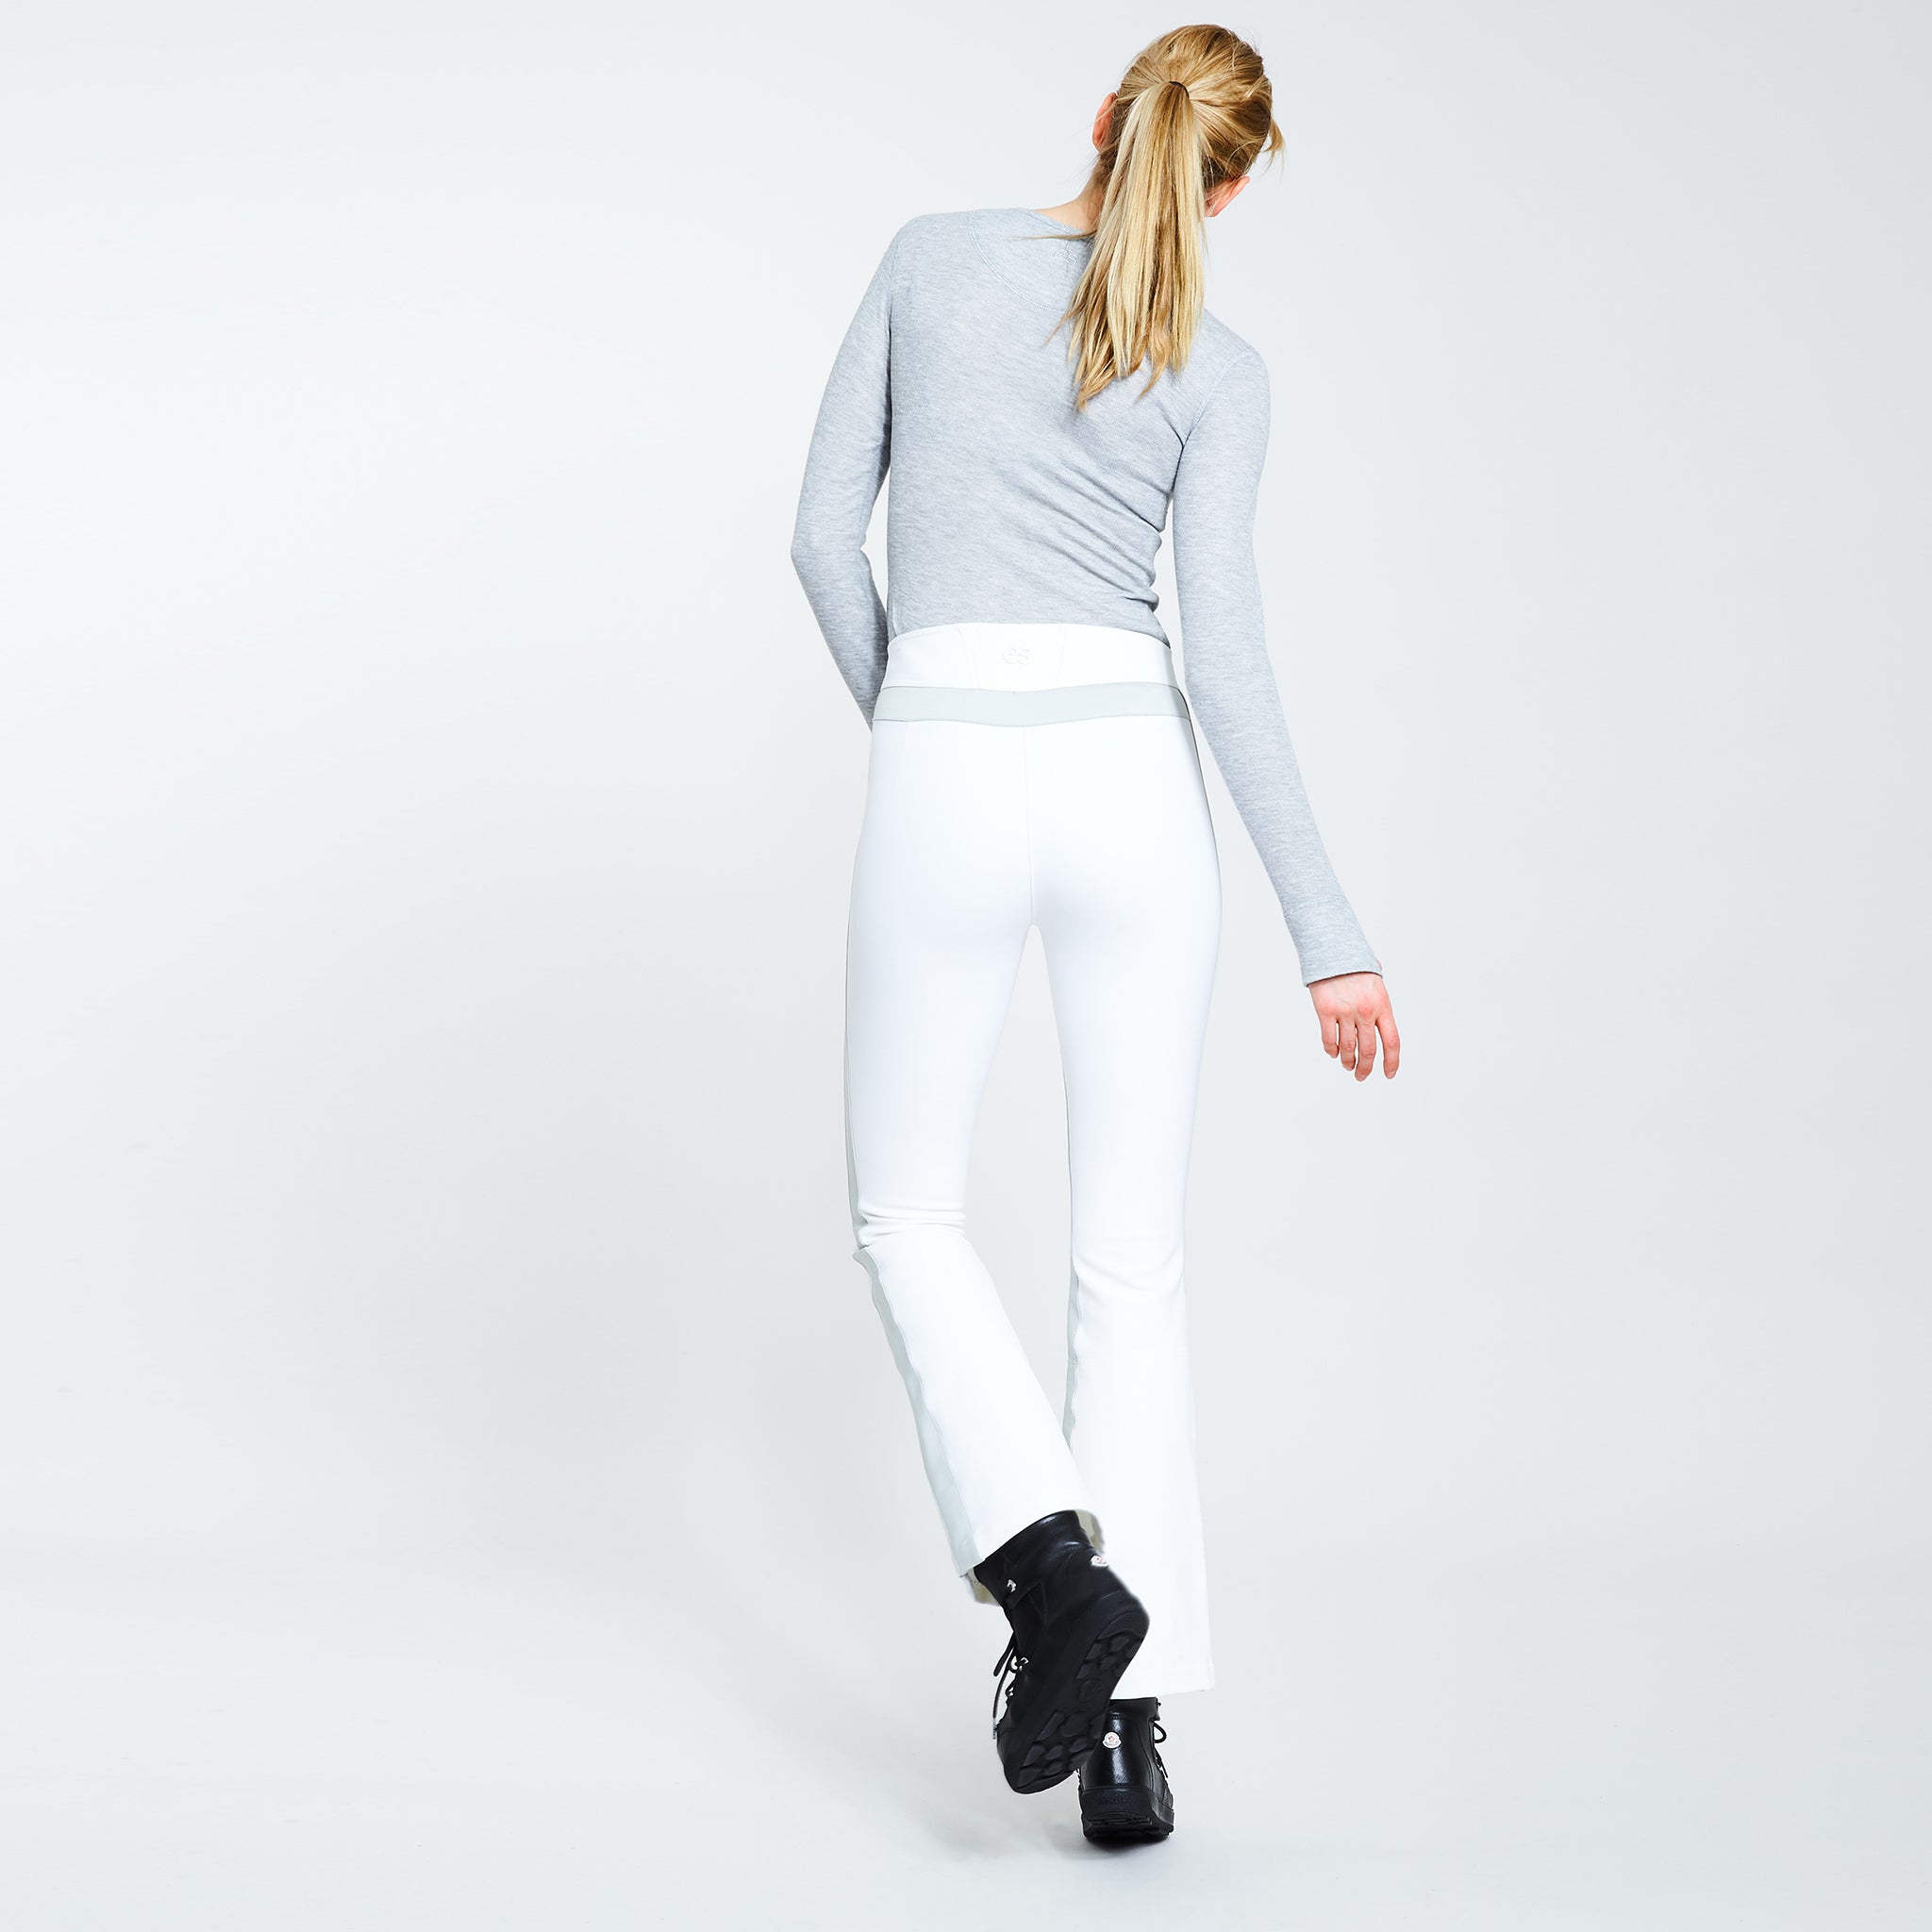 Phia ski pants in white - Erin Snow